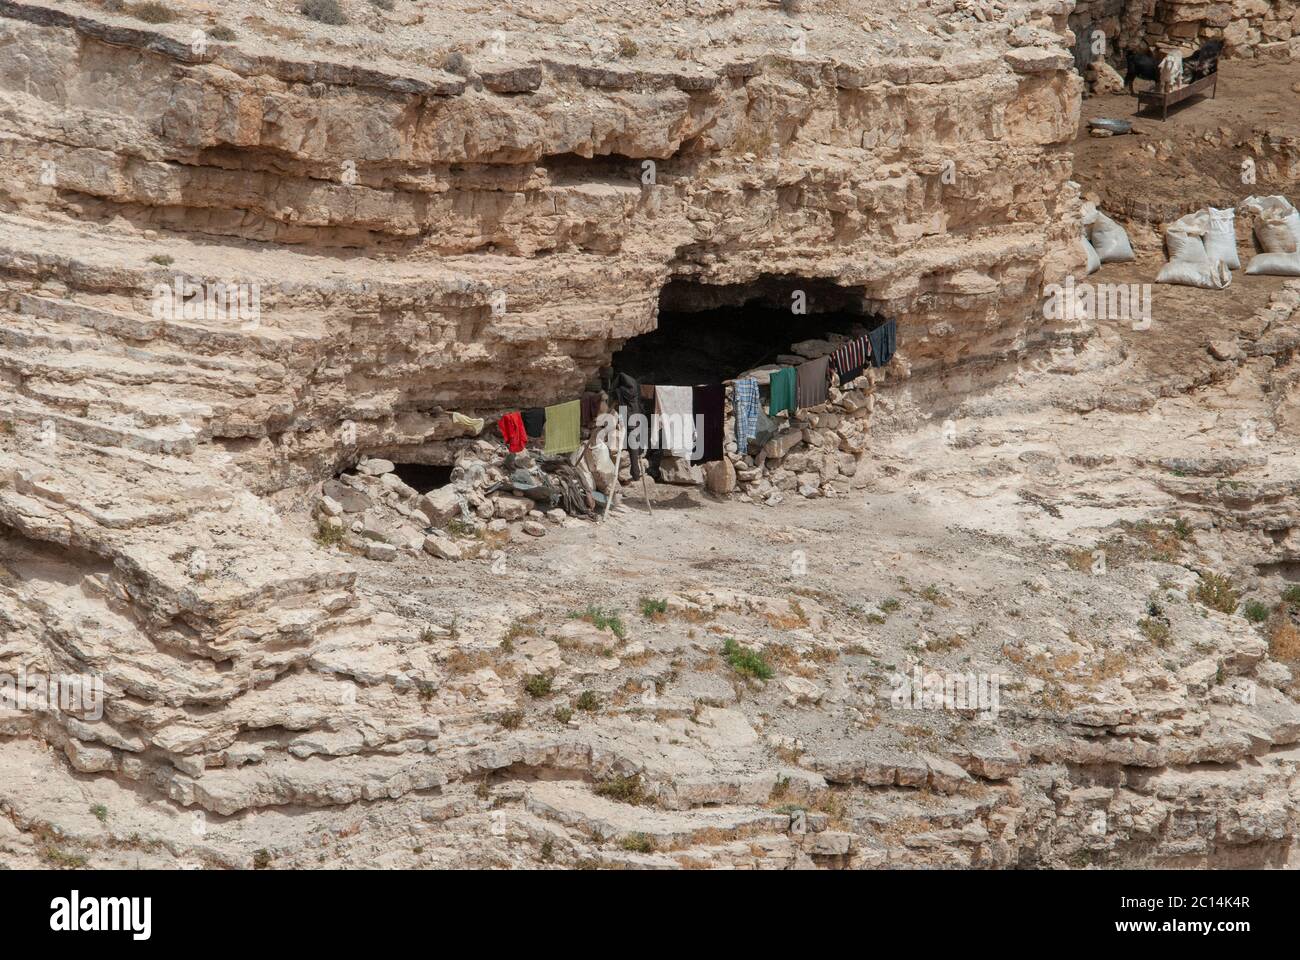 Los beduinos que vivían en cuevas naturales, cerca de Petra, Jordania Foto de stock